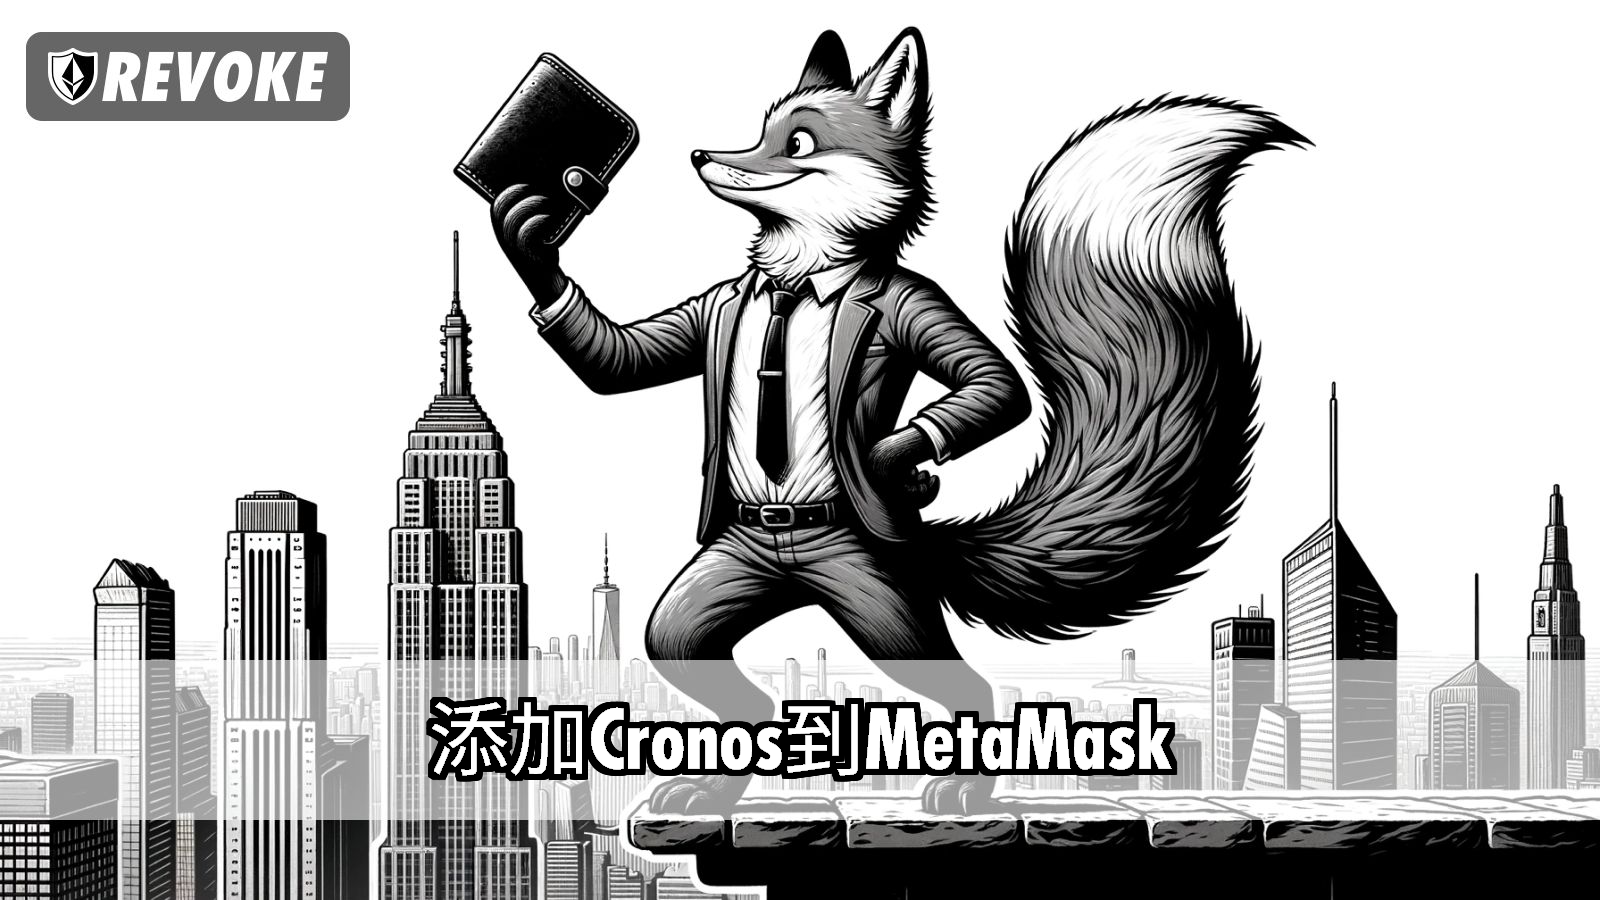 添加Cronos到MetaMask